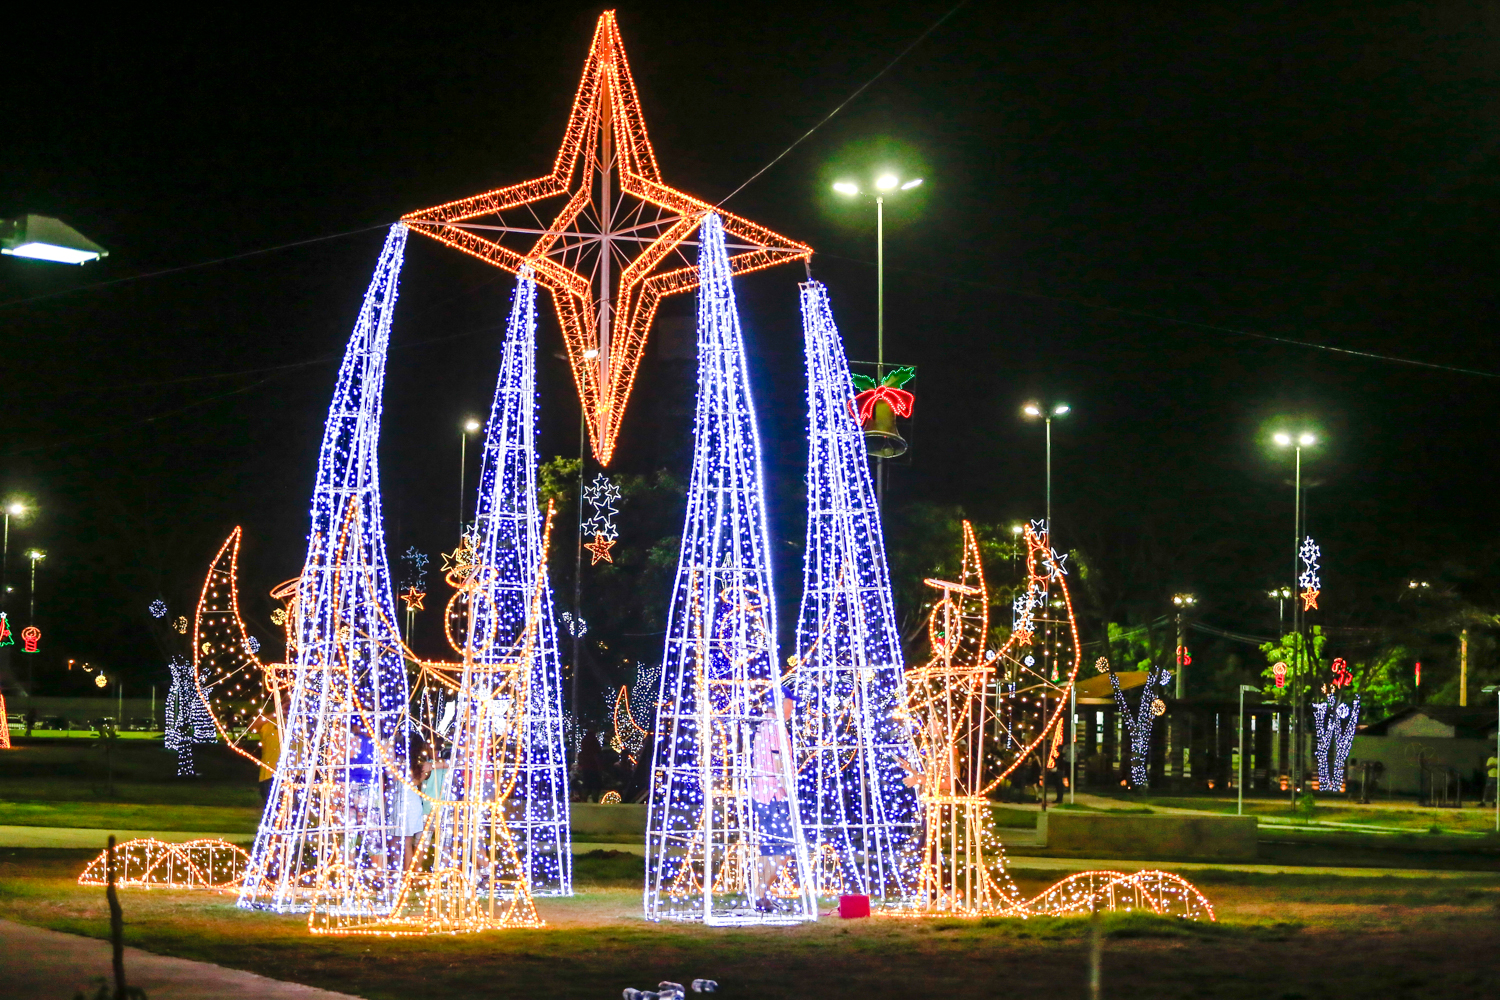 Parque Linear também recebe decoração natalina - Vero